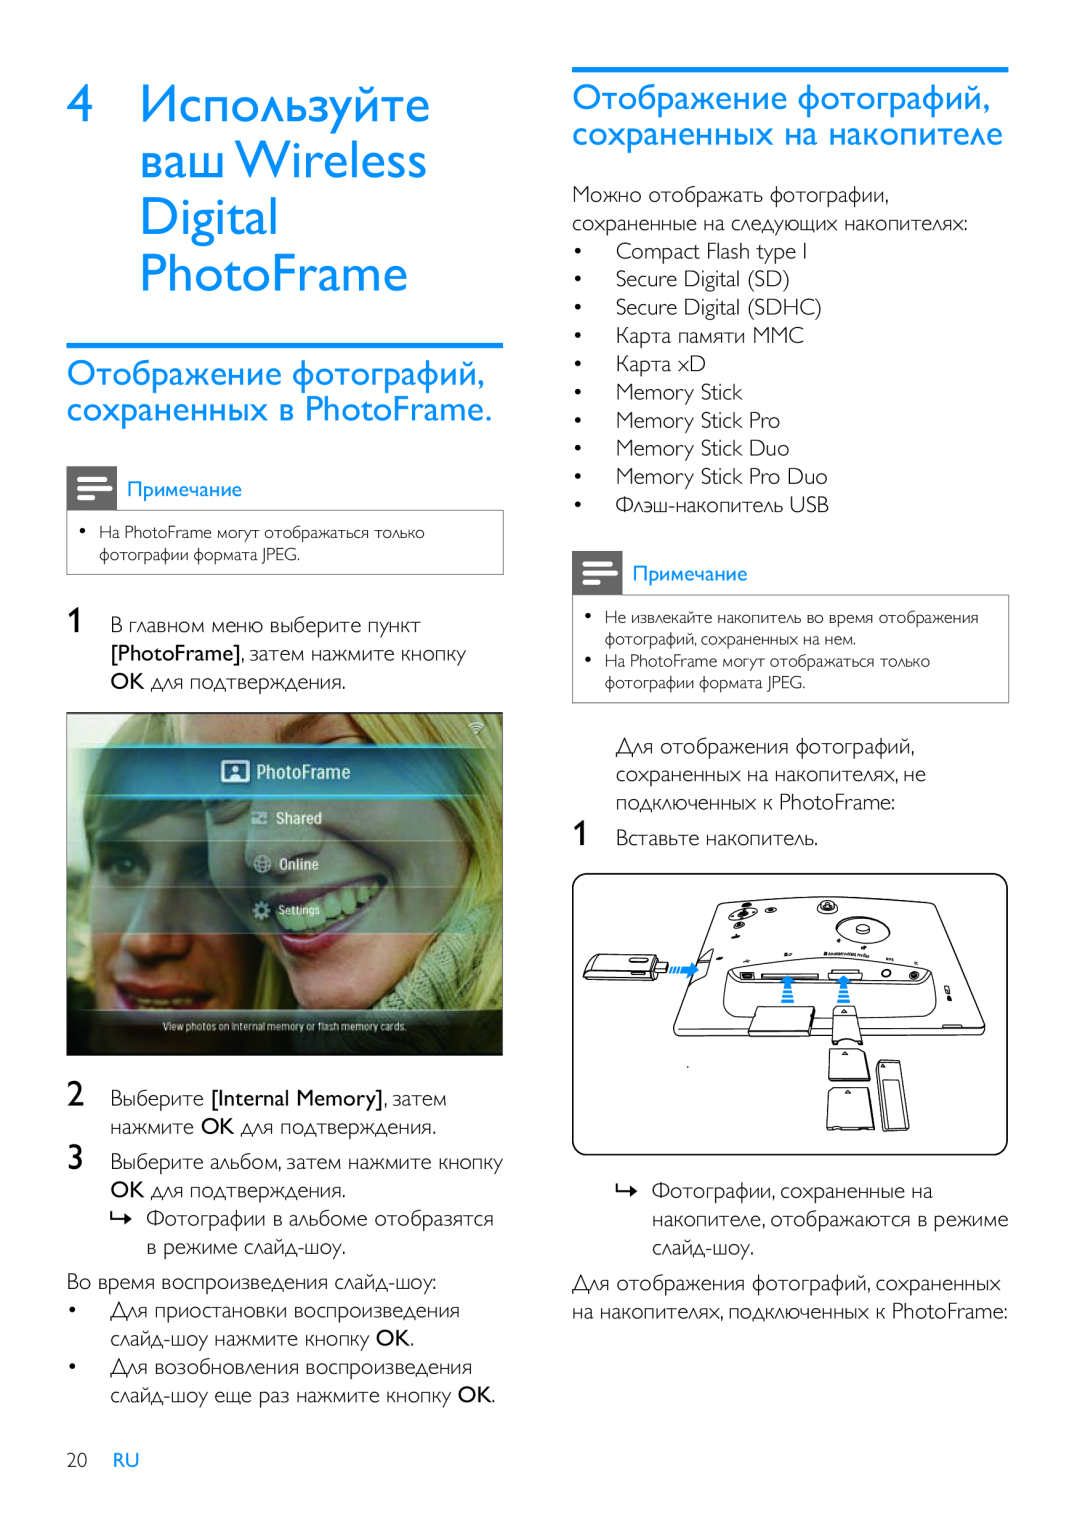 Philips 8FF3WMI 4ǕǾǼǻǸȉǴȀǶǿǲ ǯǭȅ Wireless Digital PhotoFrame, ǛǿǻǮǽǭǳǲǺǵǲ ȁǻǿǻǰǽǭȁǵǶ, ǾǻȂǽǭǺǲǺǺȈȂ ǯ PhotoFrame, ǜǽǵǹǲȄǭǺǵǲ 